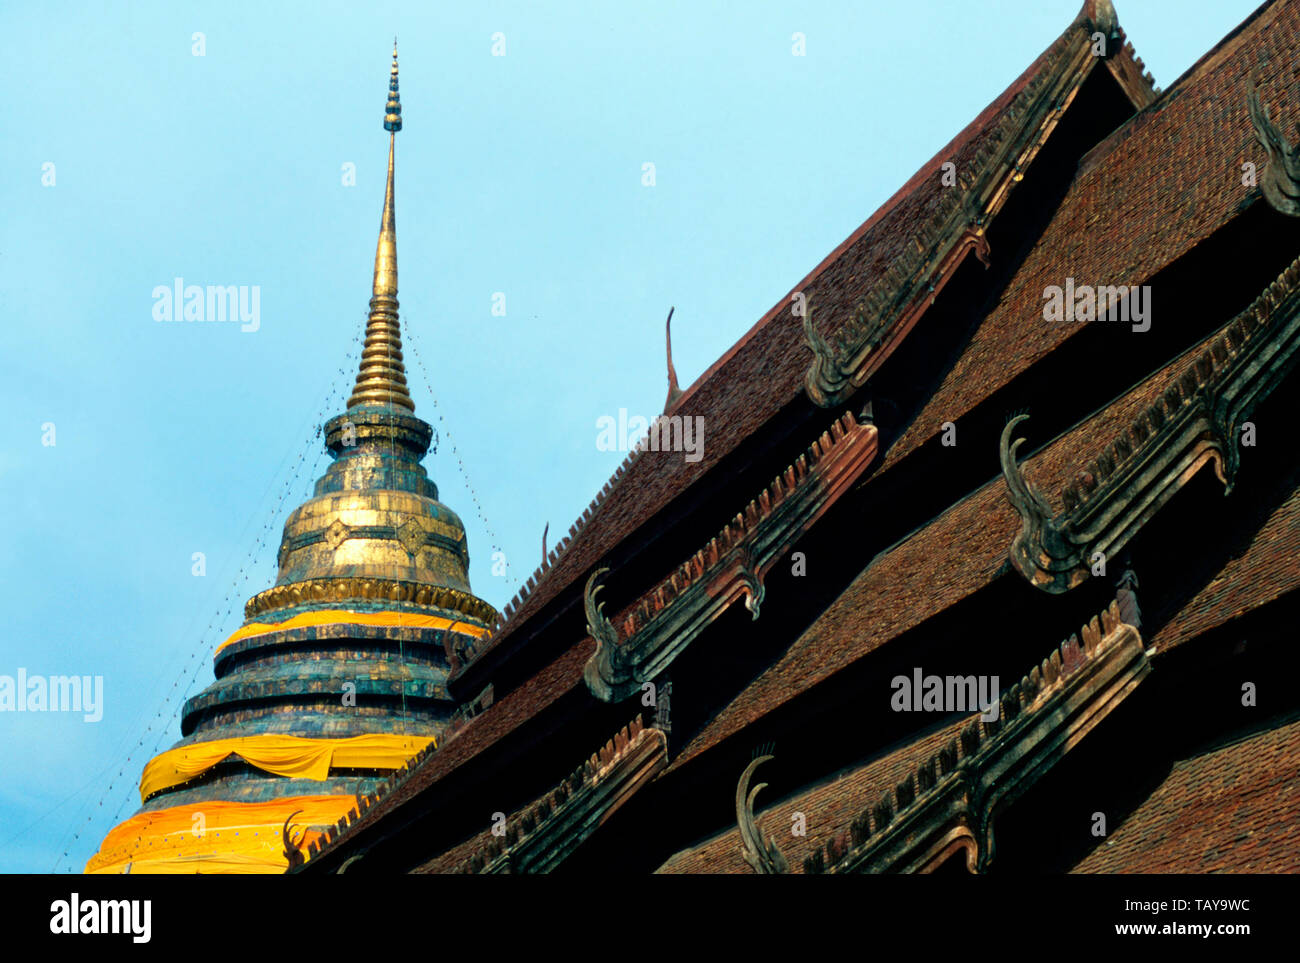 Le chedi du Wat Phra That Lampang Luang,Thailand Banque D'Images